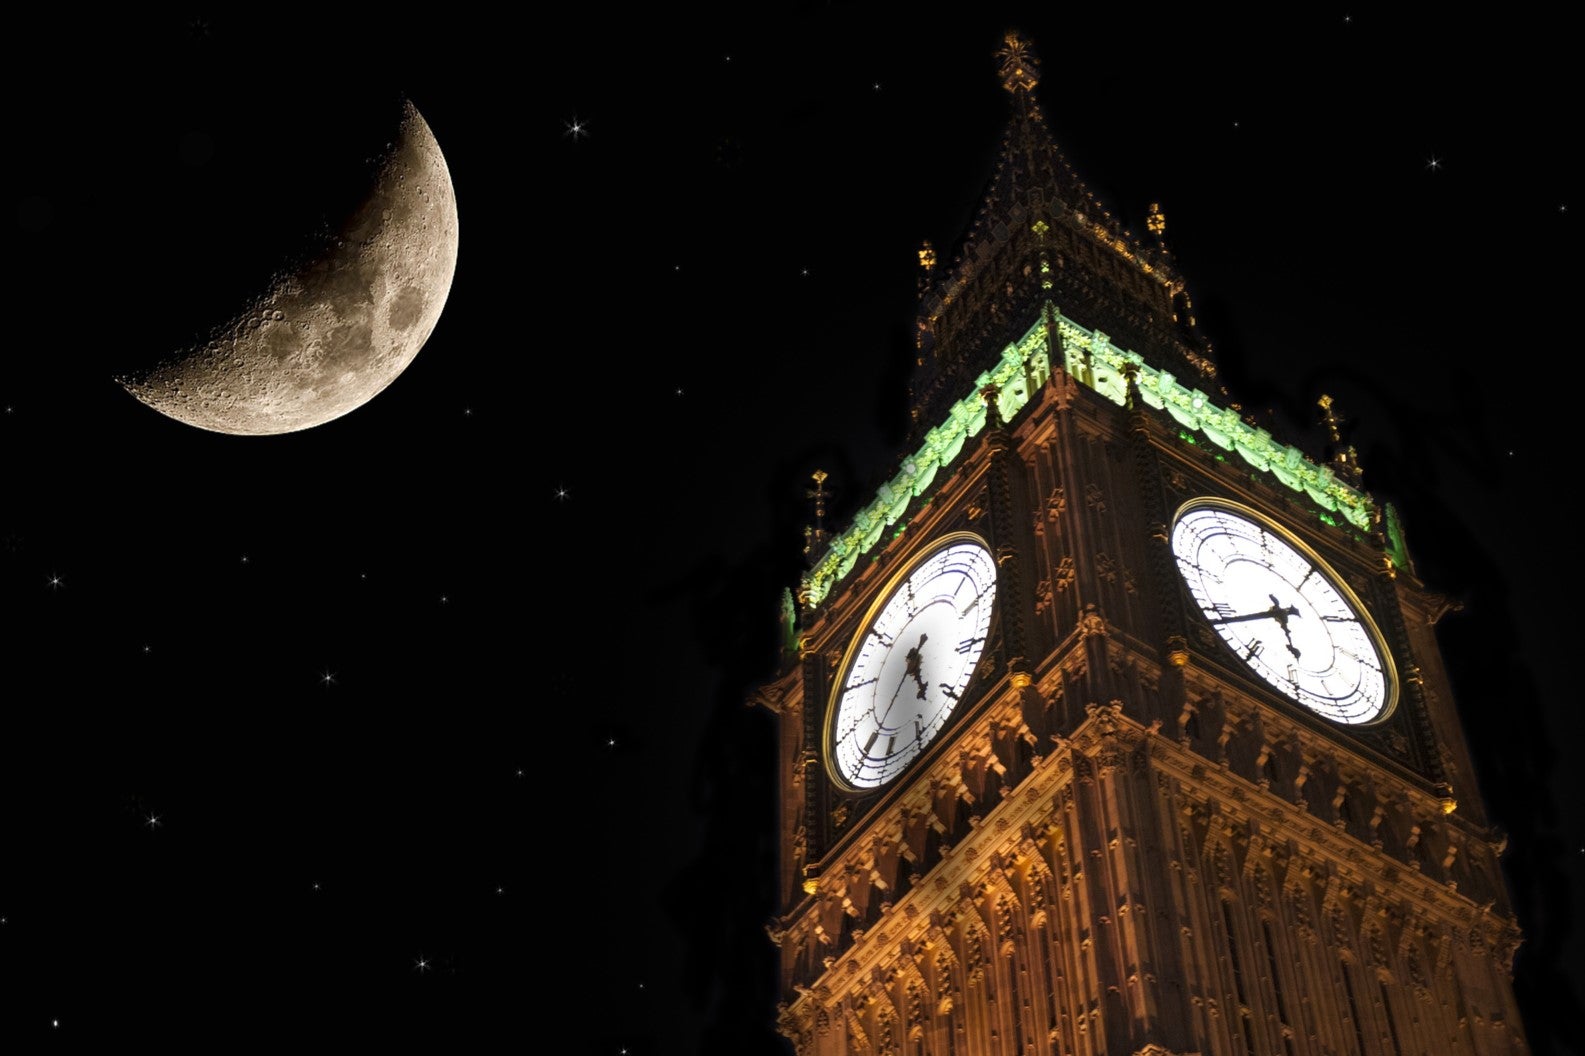 El gobierno de EE. UU. dio instrucciones a la NASA de establecer un horario estándar unificado para la Luna para 2026, que recibirá el nombre de Tiempo Lunar Coordinado (LTC).